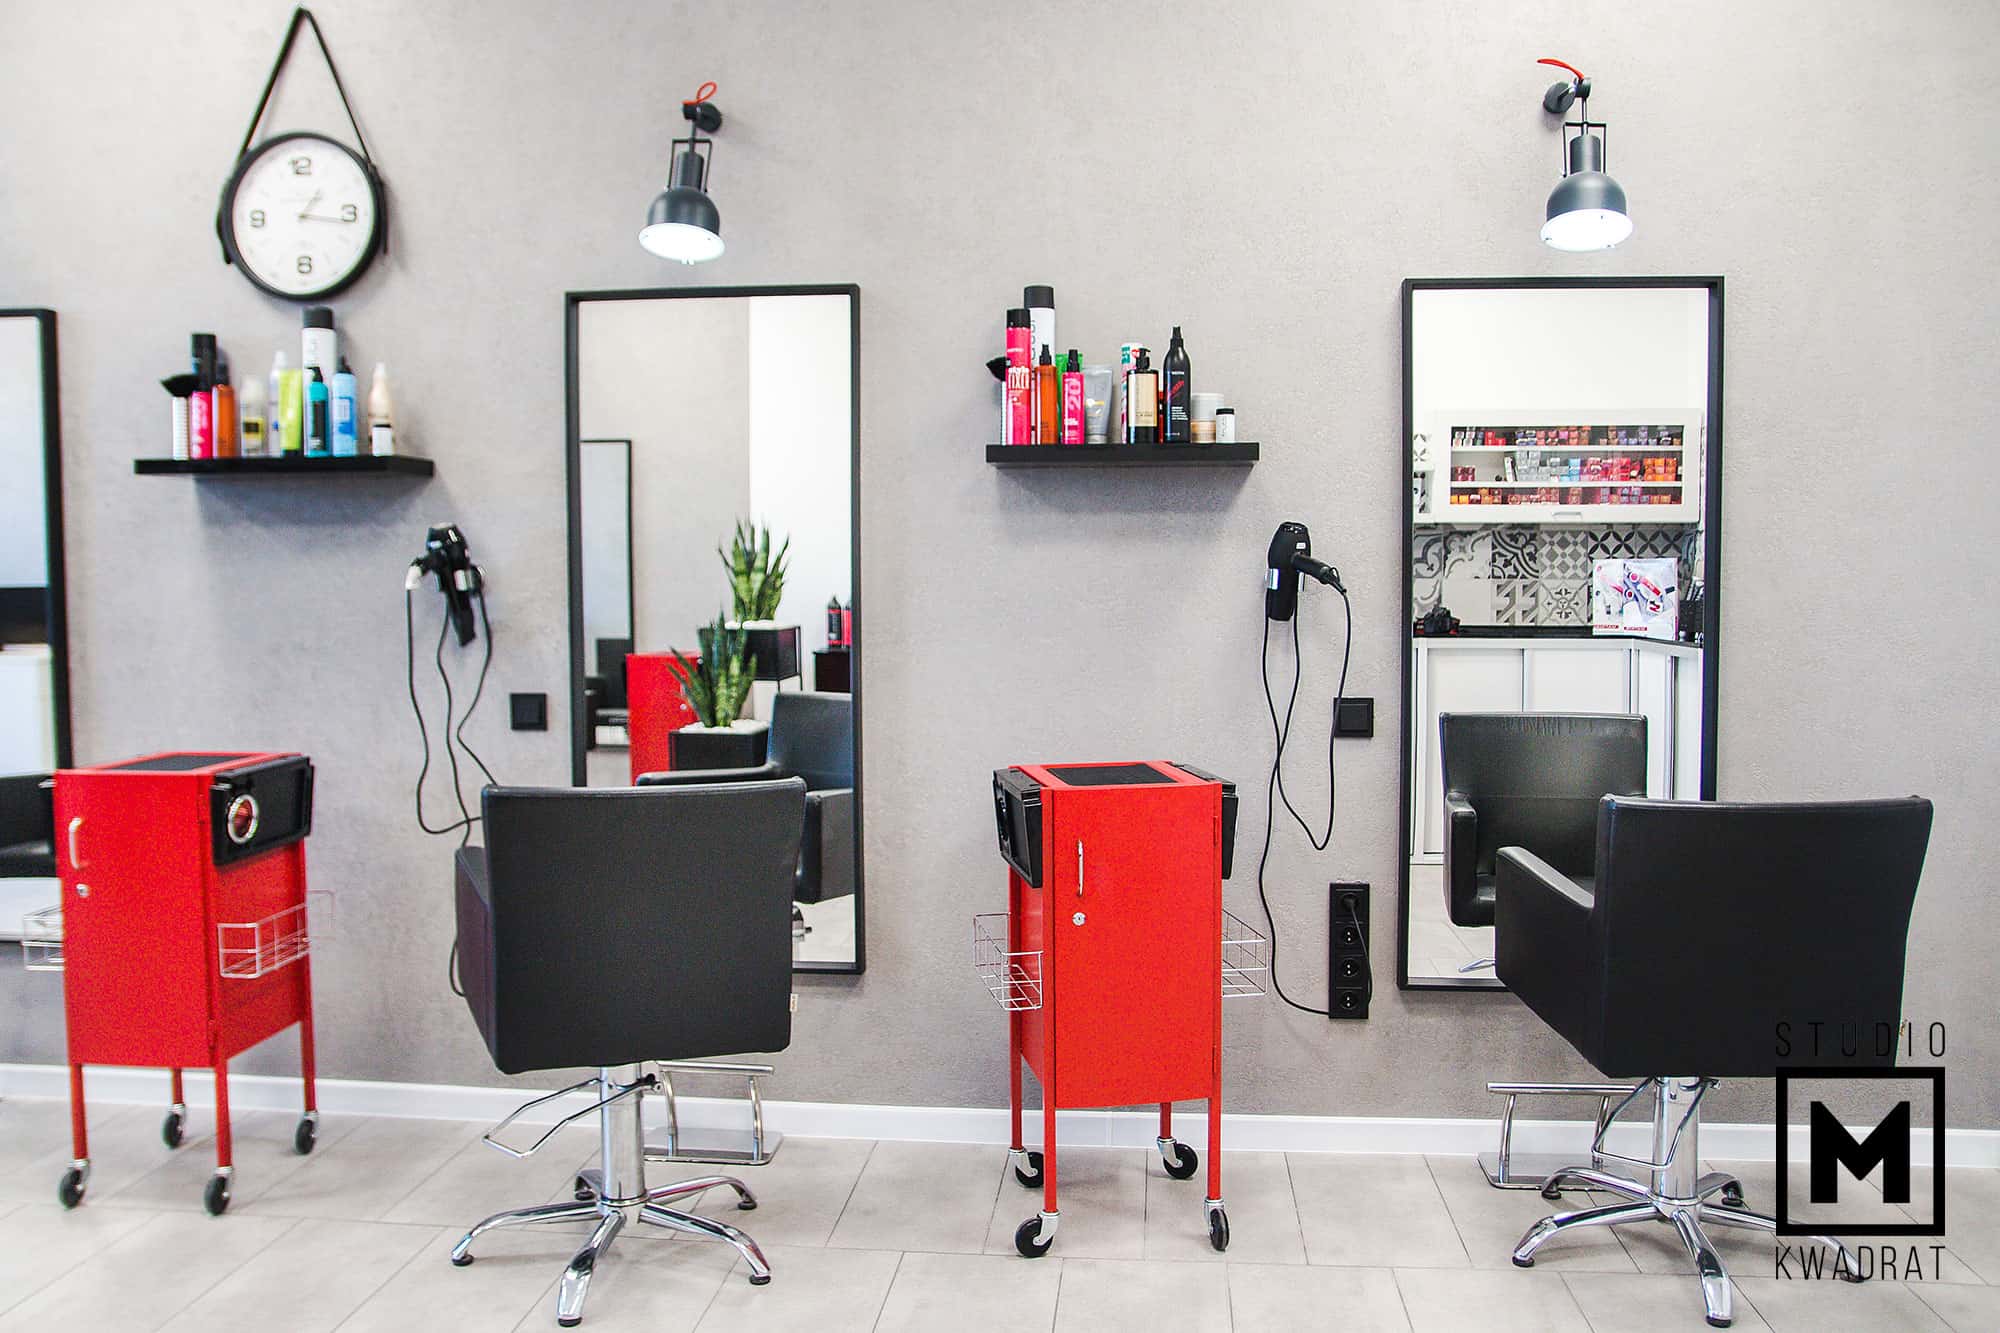 salon fryzjerski, stanowiska pracy fryzjera, czerwone stojaki